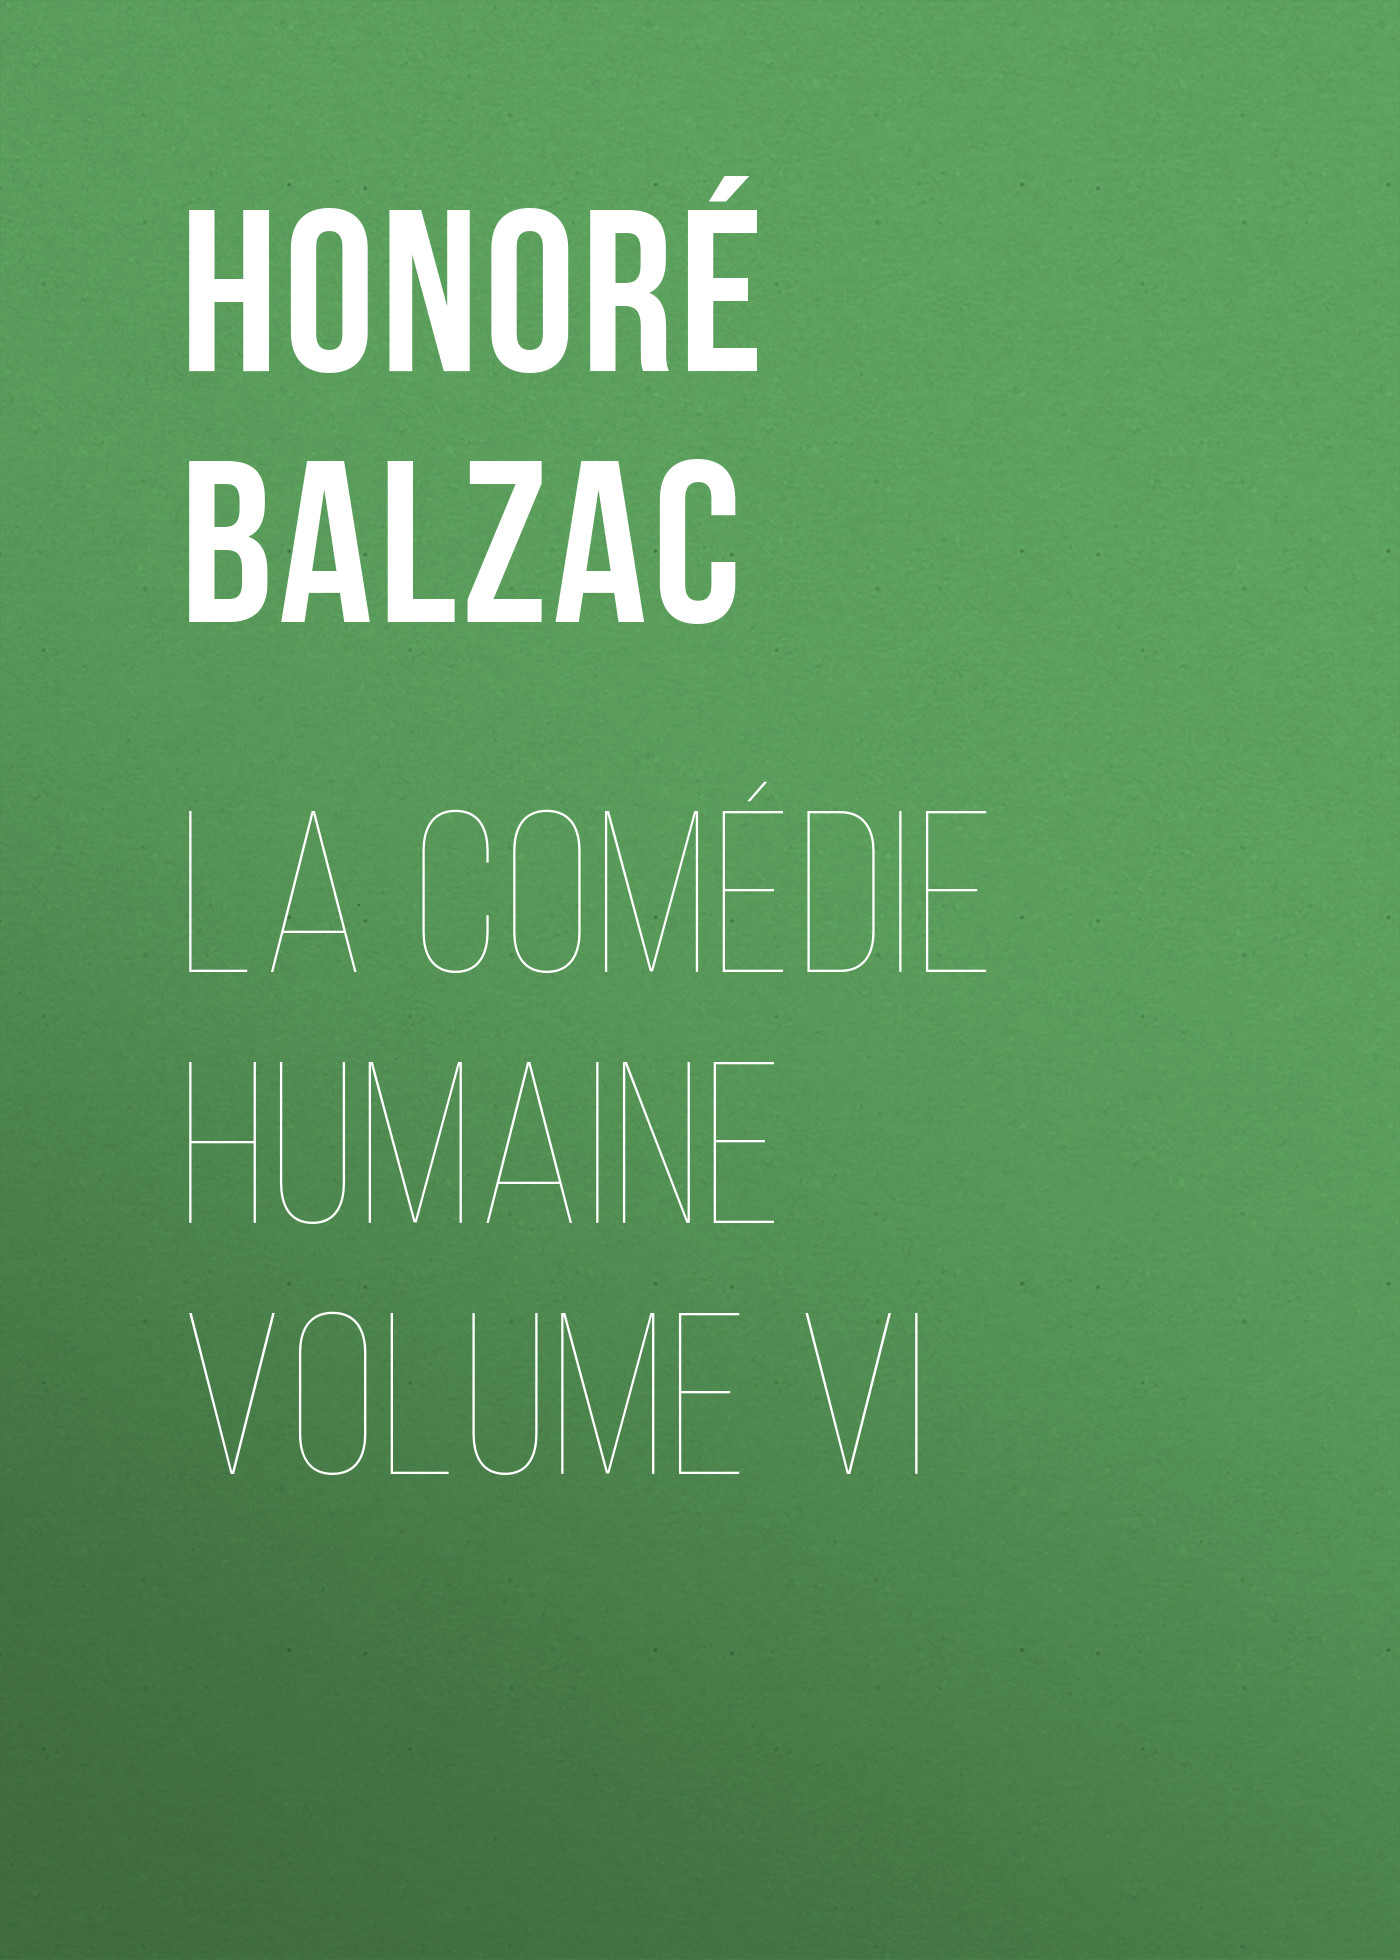 Книга La Comédie humaine volume VI из серии , созданная Honoré Balzac, может относится к жанру Зарубежная старинная литература, Зарубежная классика. Стоимость электронной книги La Comédie humaine volume VI с идентификатором 24176988 составляет 0 руб.